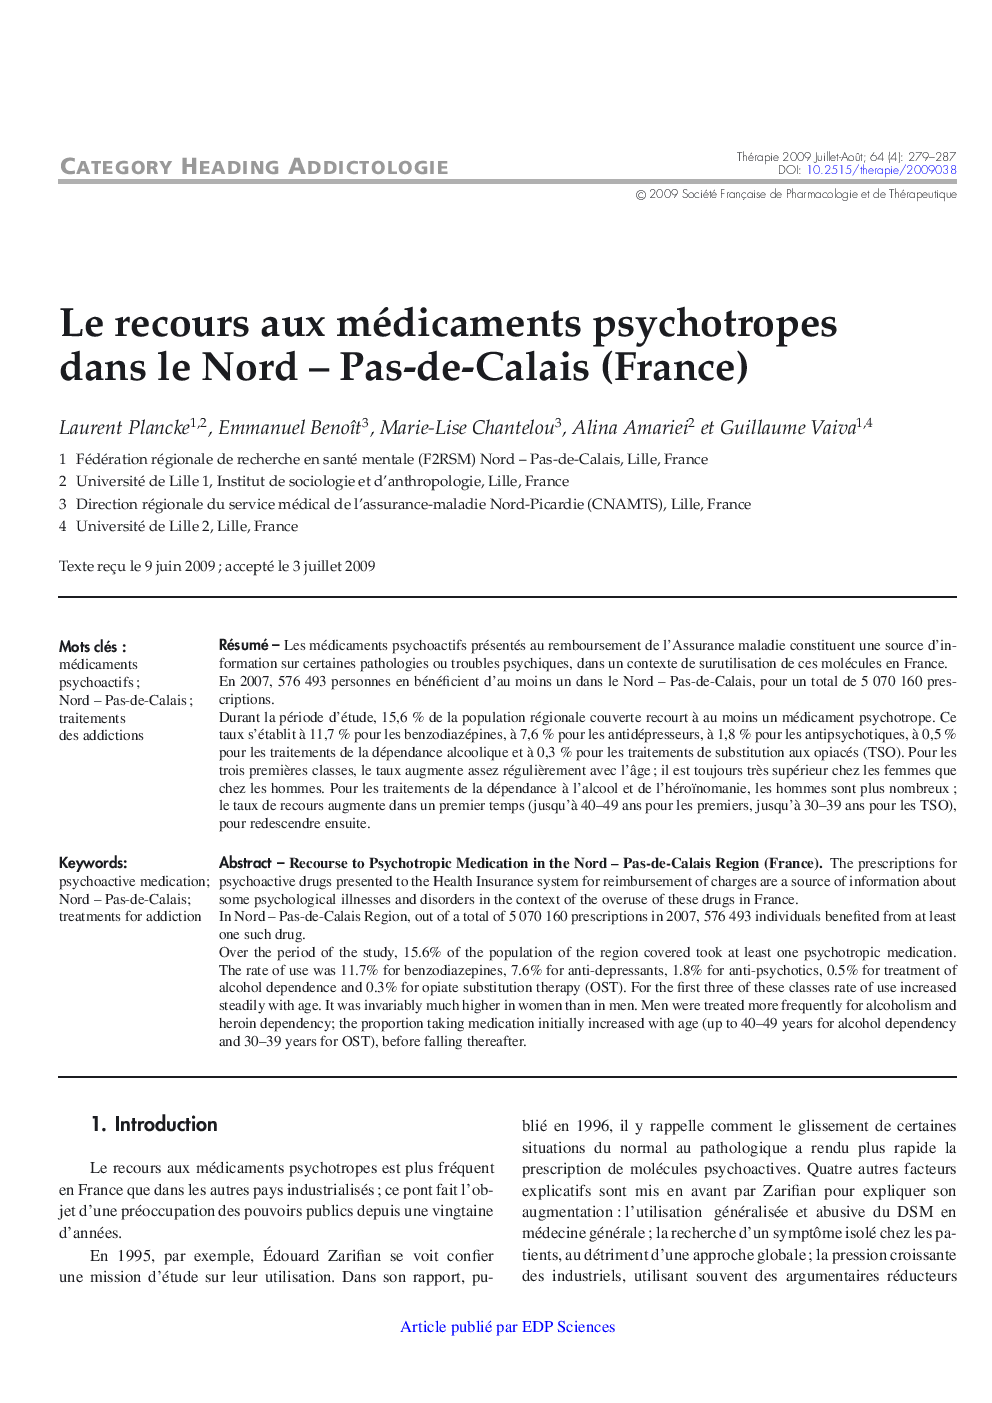 Le recours aux médicaments psychotropes dans le Nord - Pas-de-Calais (France)